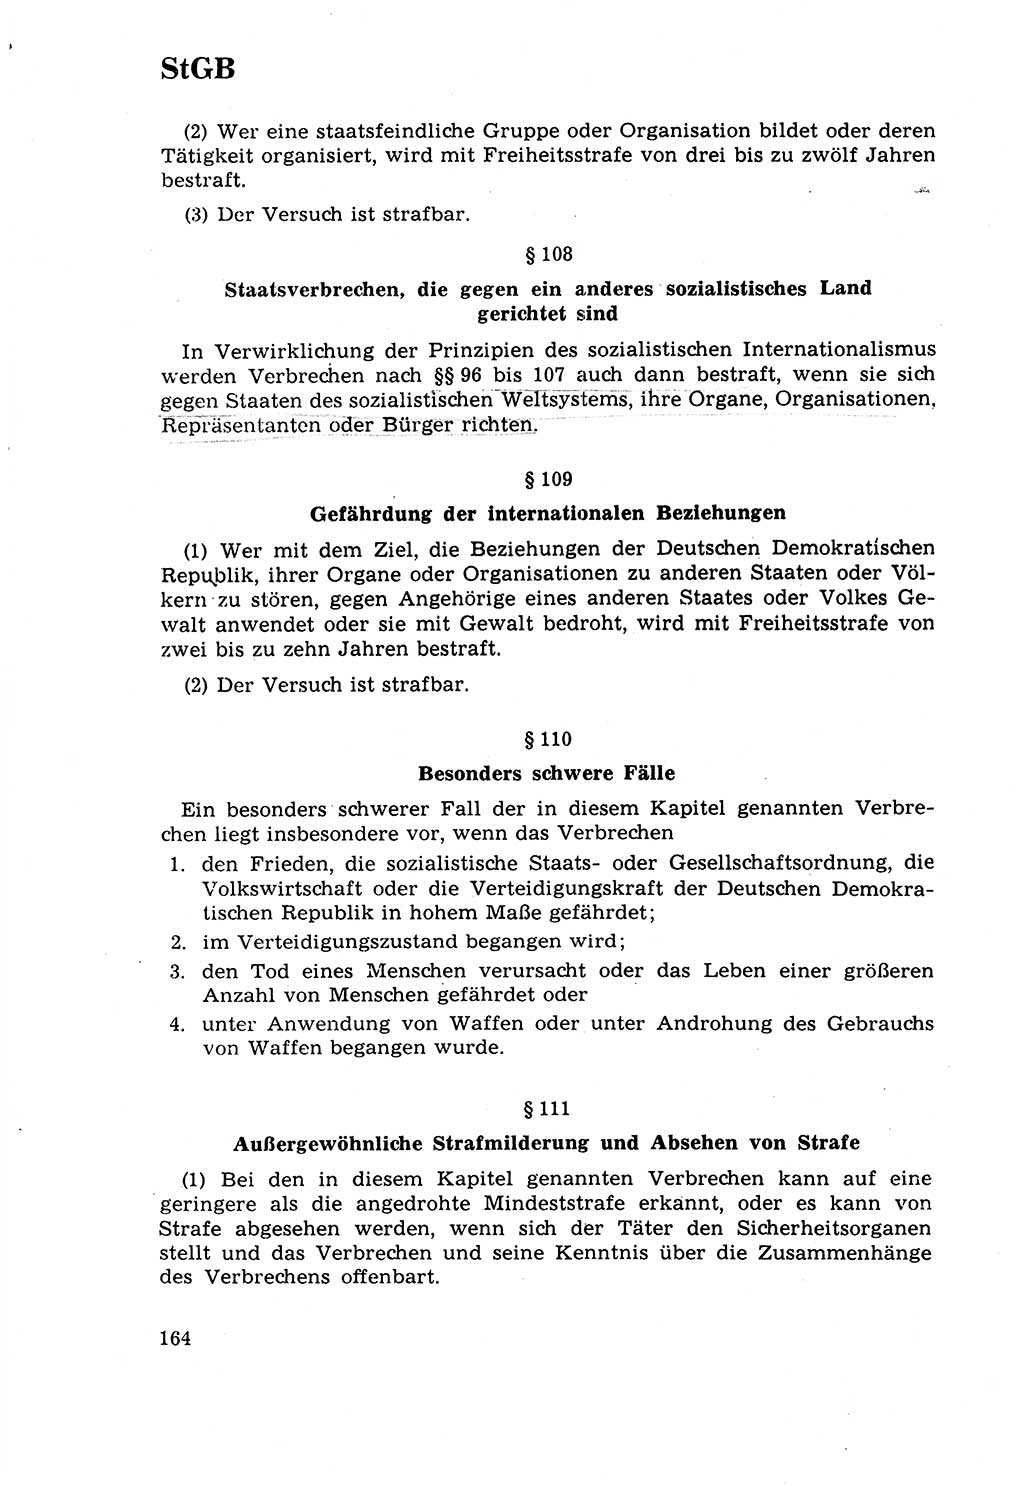 Strafrecht [Deutsche Demokratische Republik (DDR)] 1968, Seite 164 (Strafr. DDR 1968, S. 164)